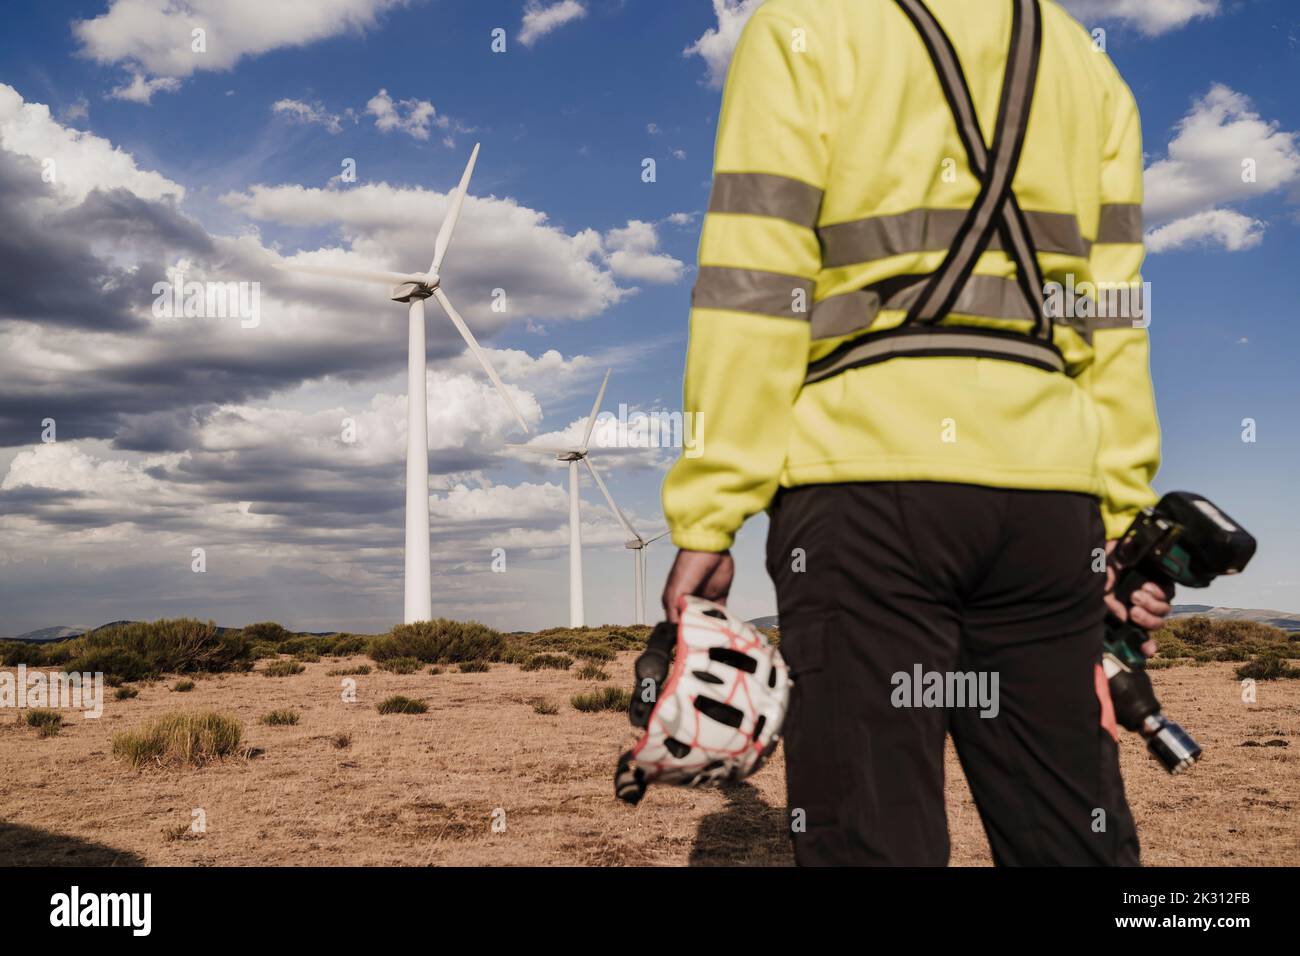 Technicien tenant l'outil de travail et le casque debout à la ferme éolienne Banque D'Images